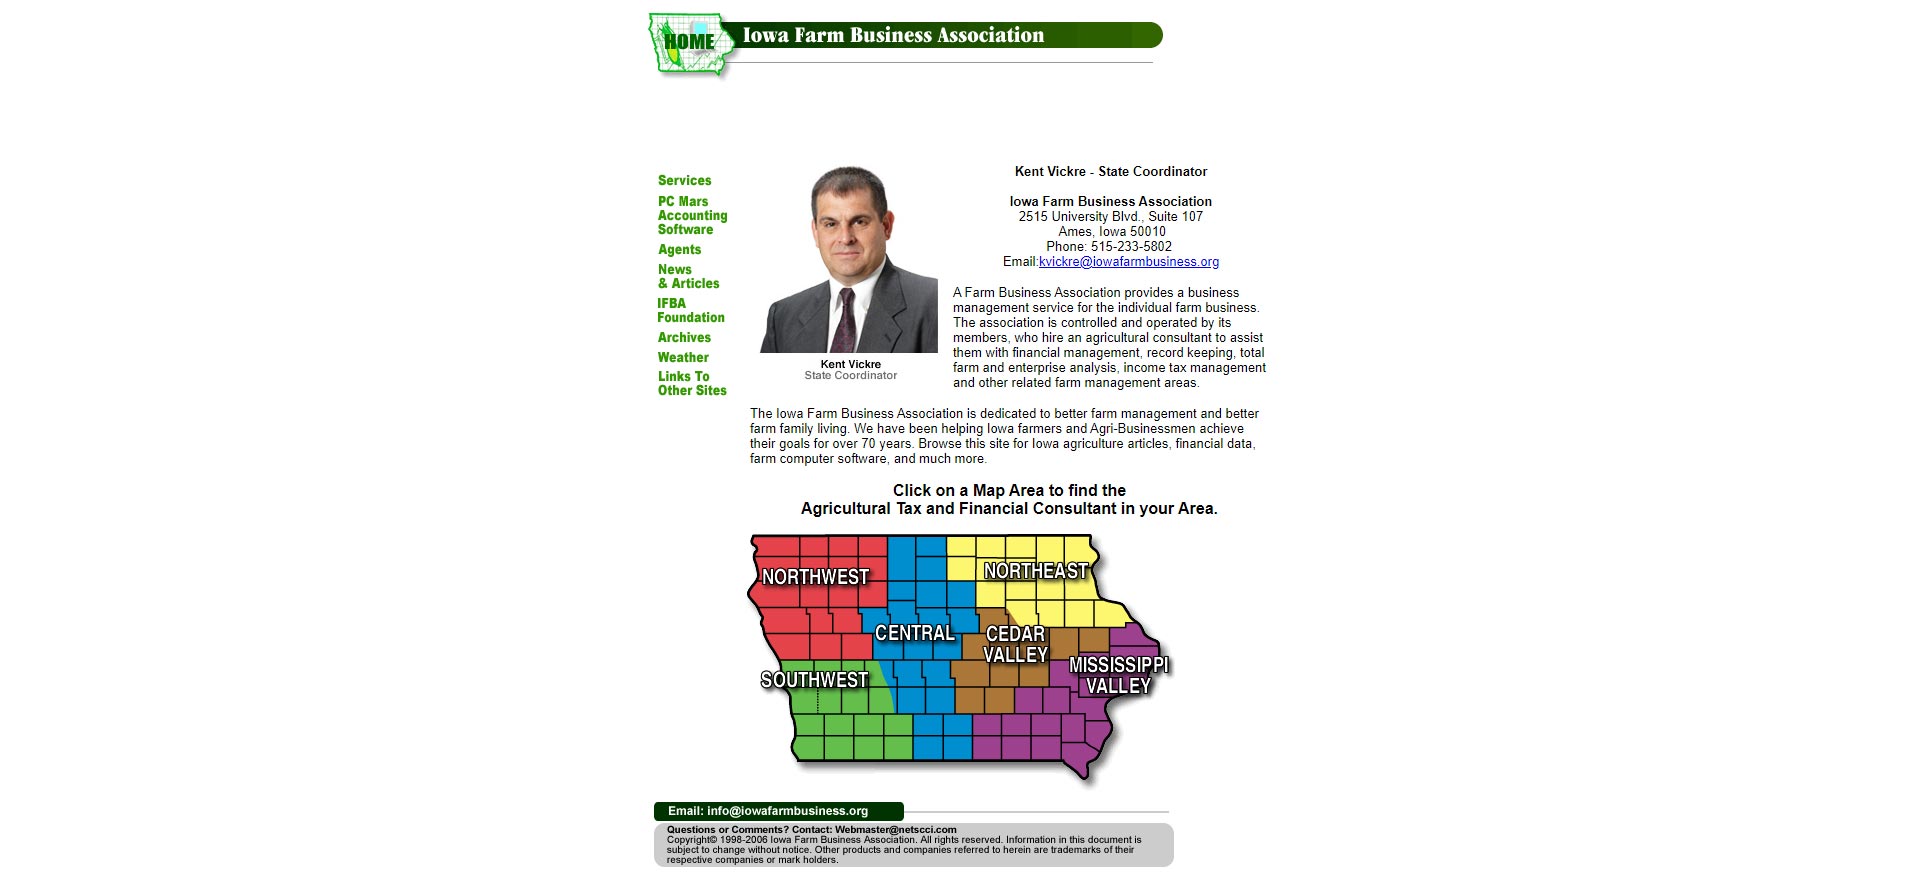 Previous design for the Iowa Farm Business Association website